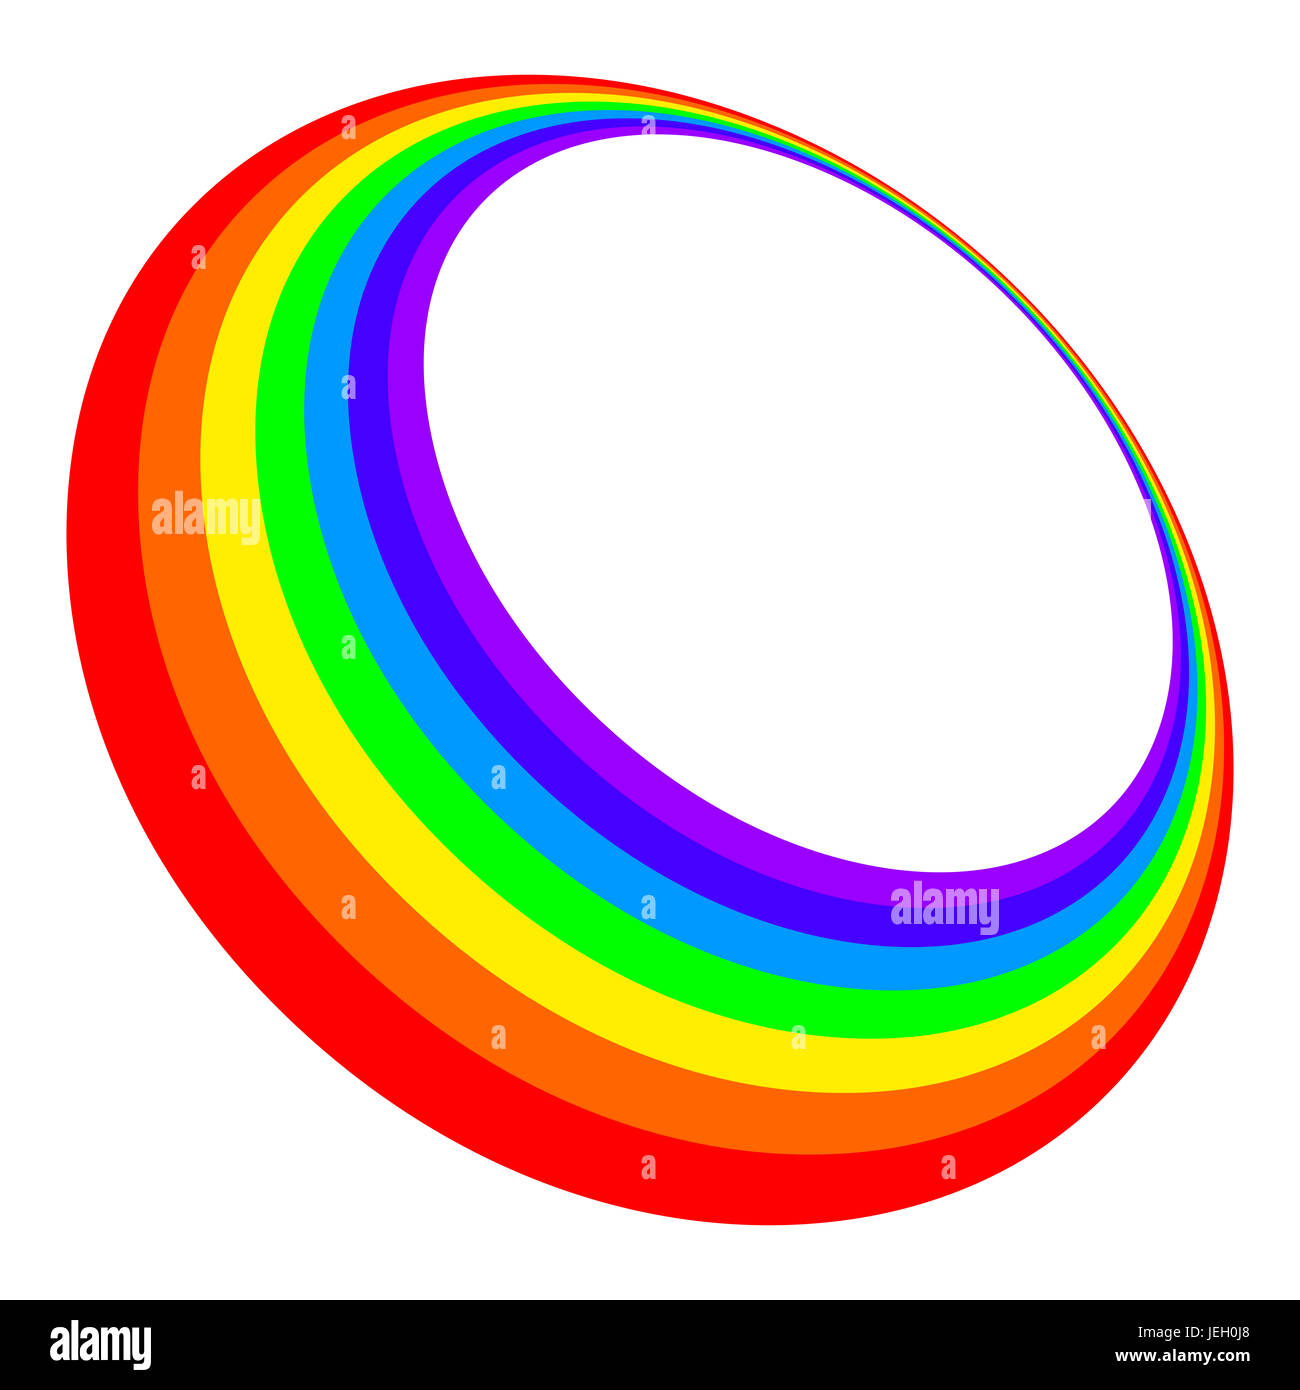 Tridimensionale cerchio arcobaleno in sette colori dello spettro di luce visibile rosso, arancione, giallo, verde, blu indaco e viola. Foto Stock